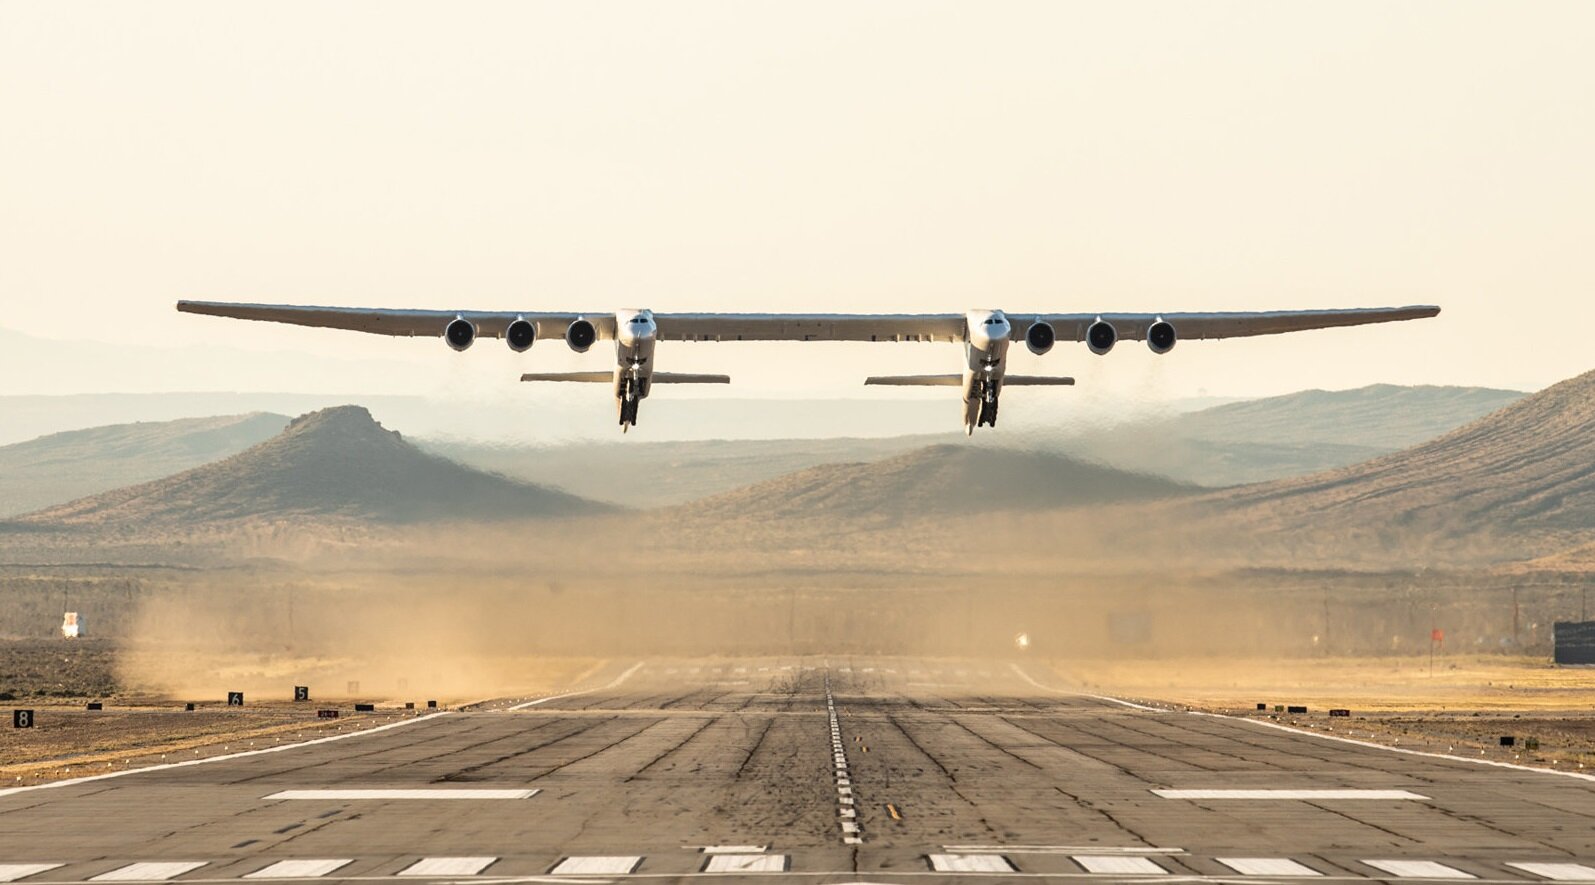 Το μεγαλύτερο αεροσκάφος στον κόσμο, το Stratolaunch, πραγματοποίησε την παρθενική του πτήση